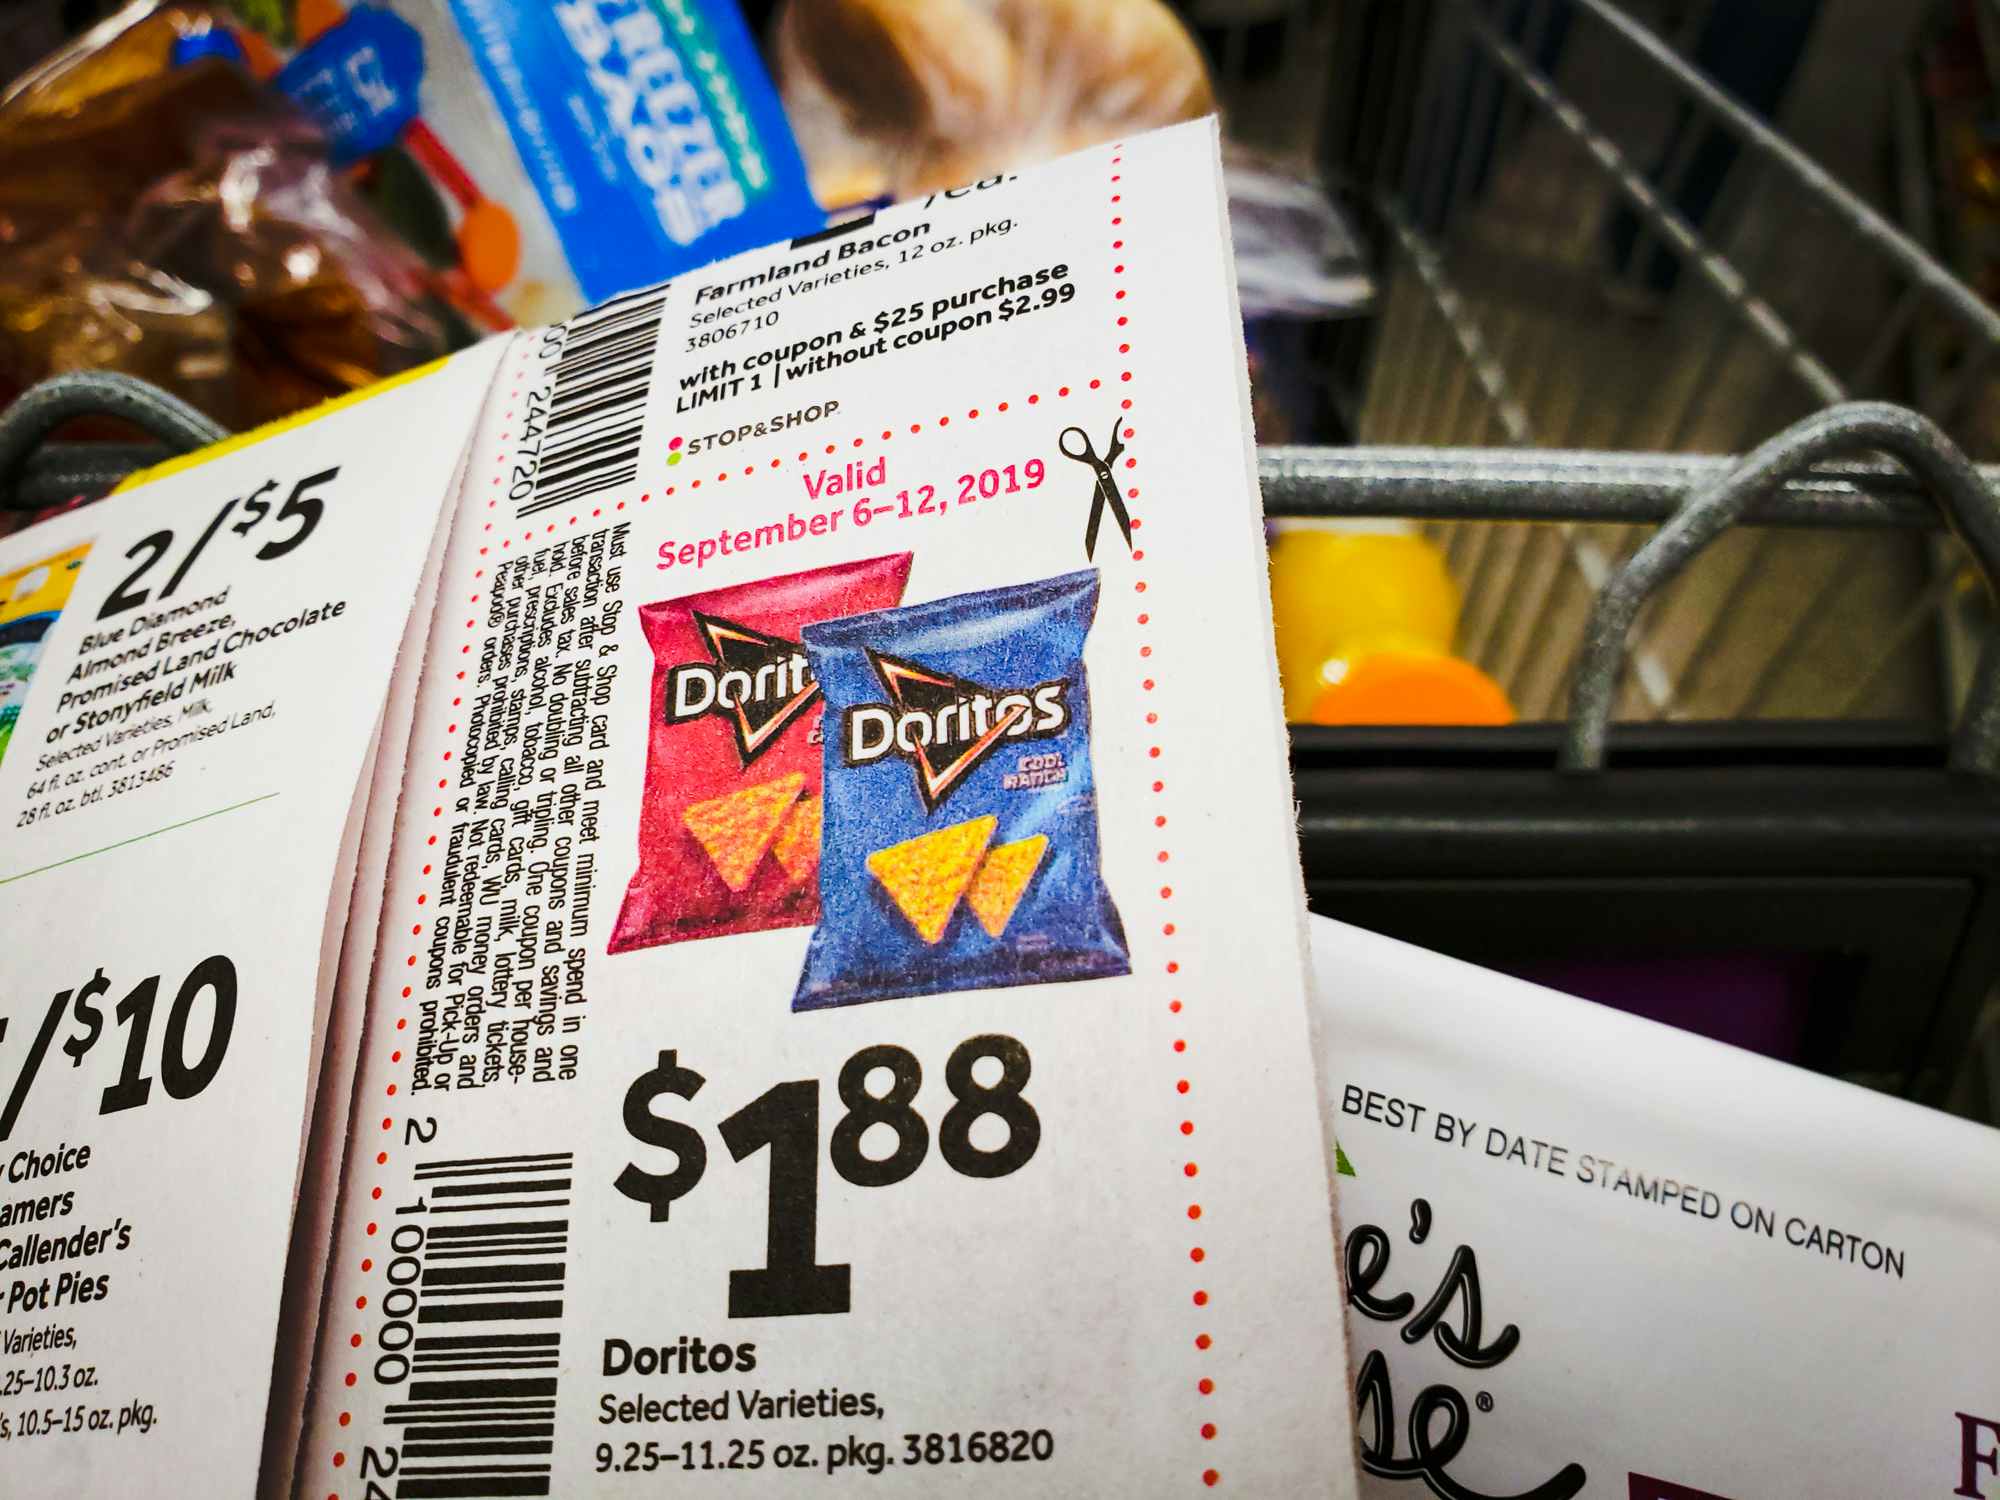 Doritos coupon and grocery cart